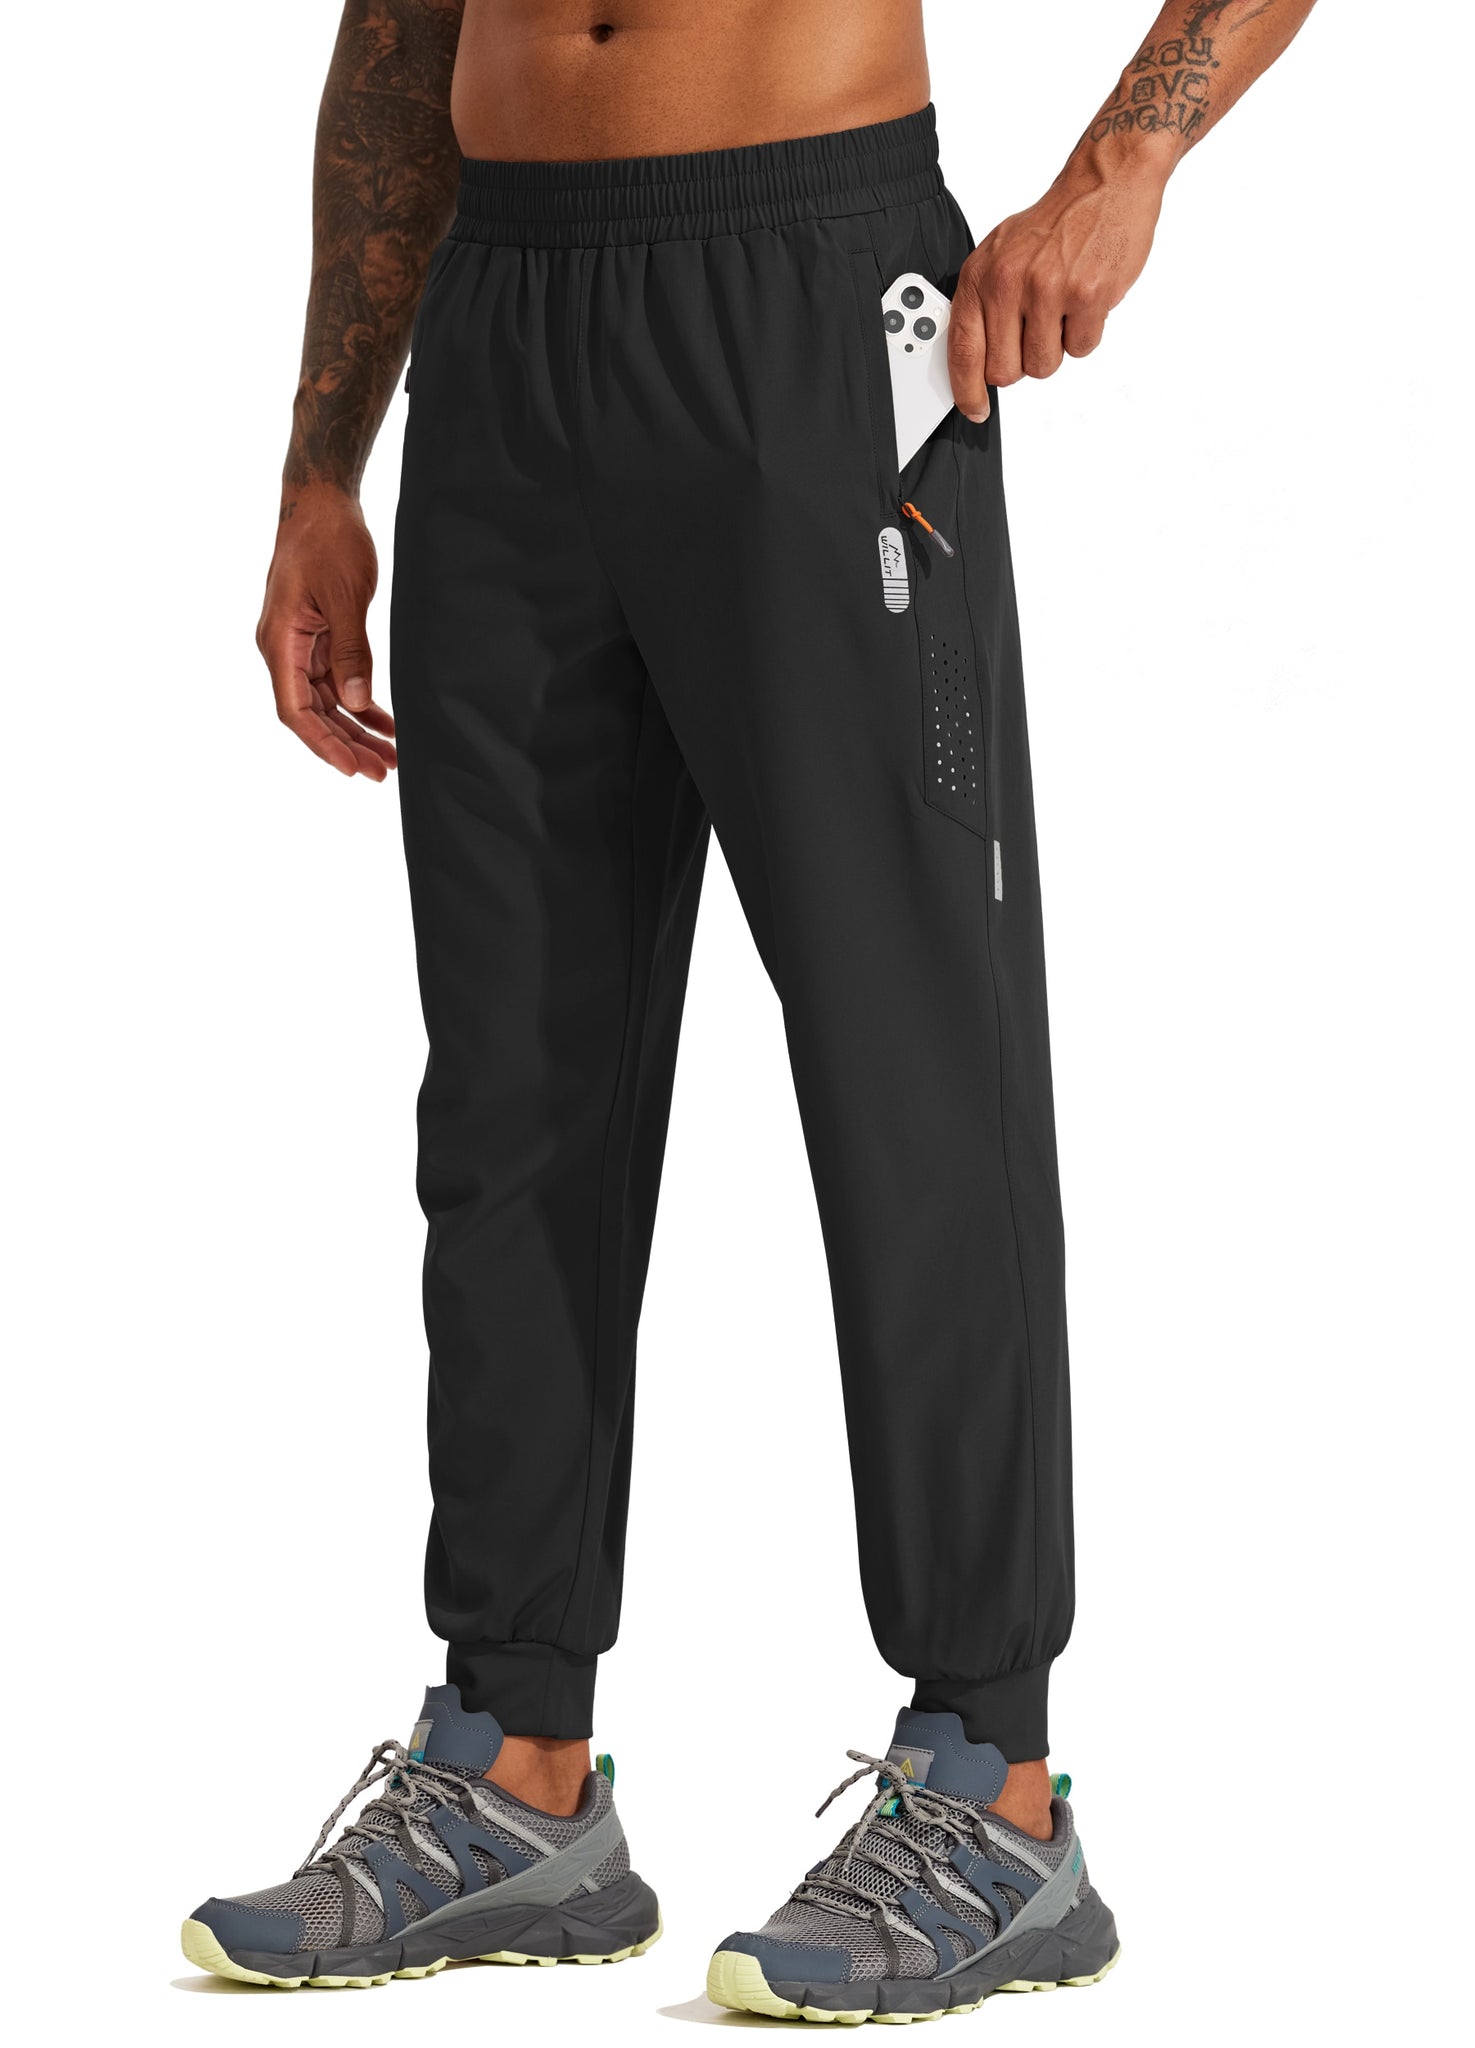 Men's Lightweight Quick Dry Joggers -Zipper Pockets